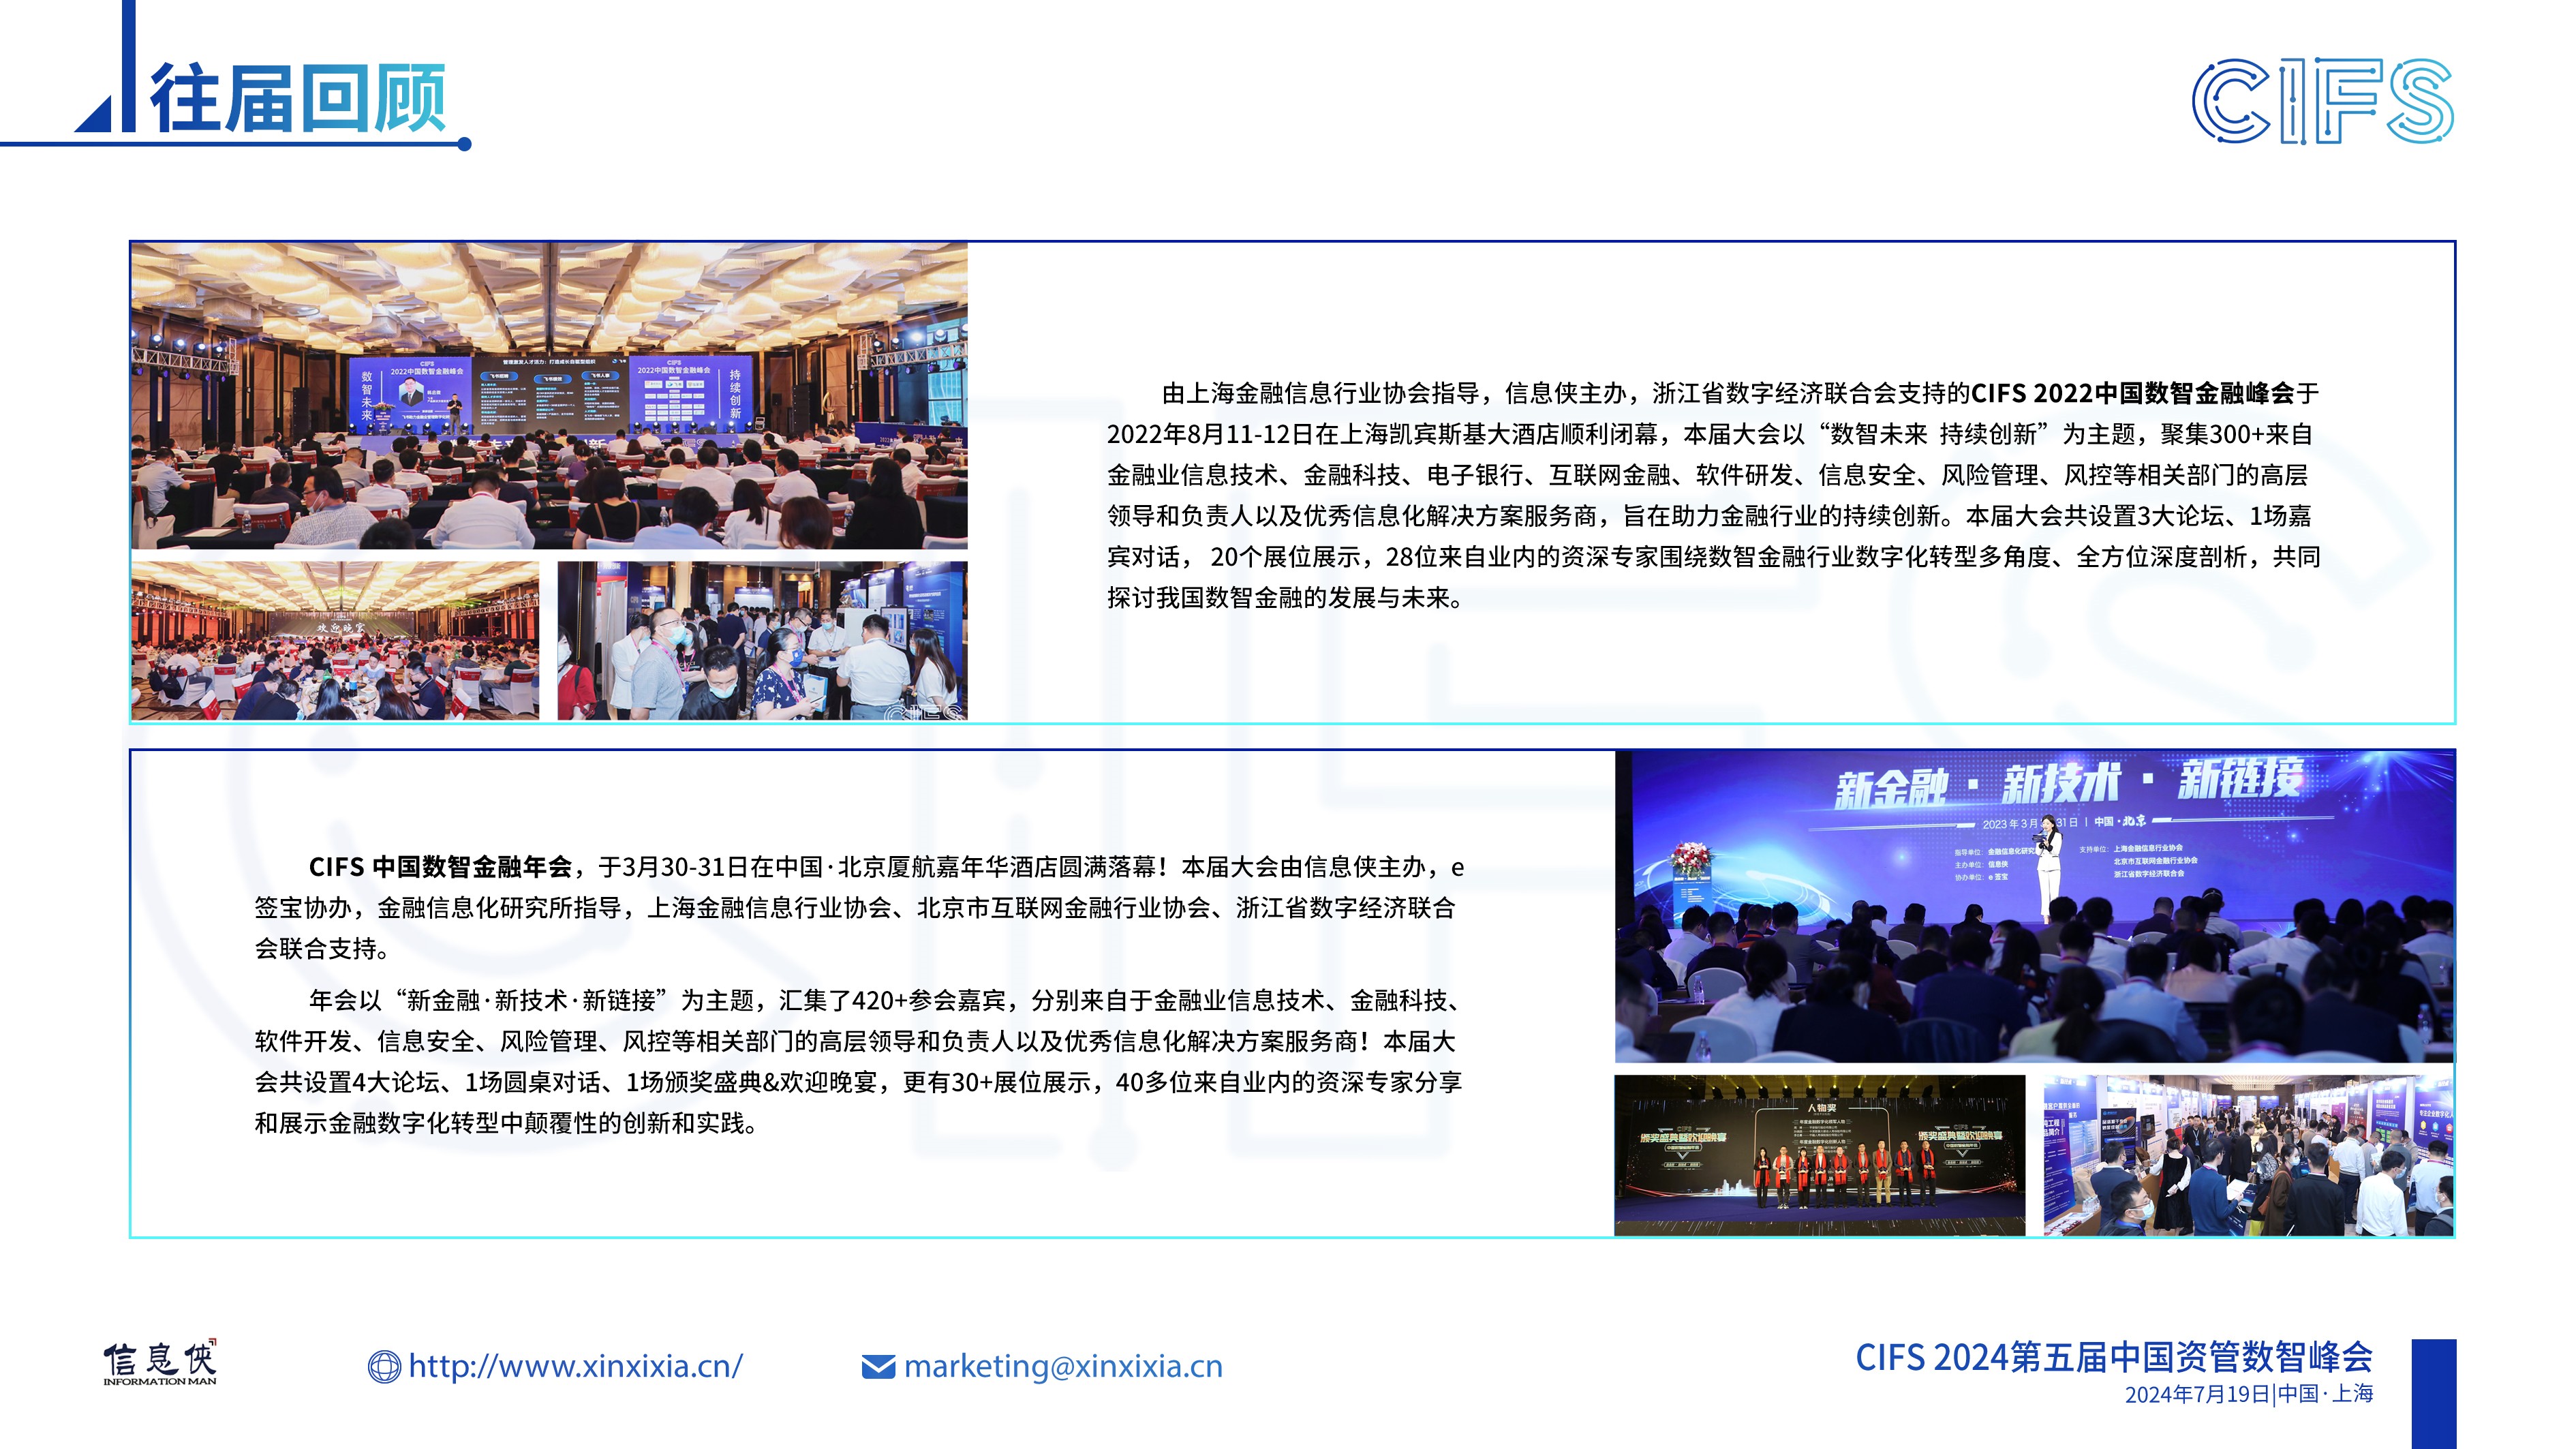 CIFS 2024第五届中国资管数智峰会